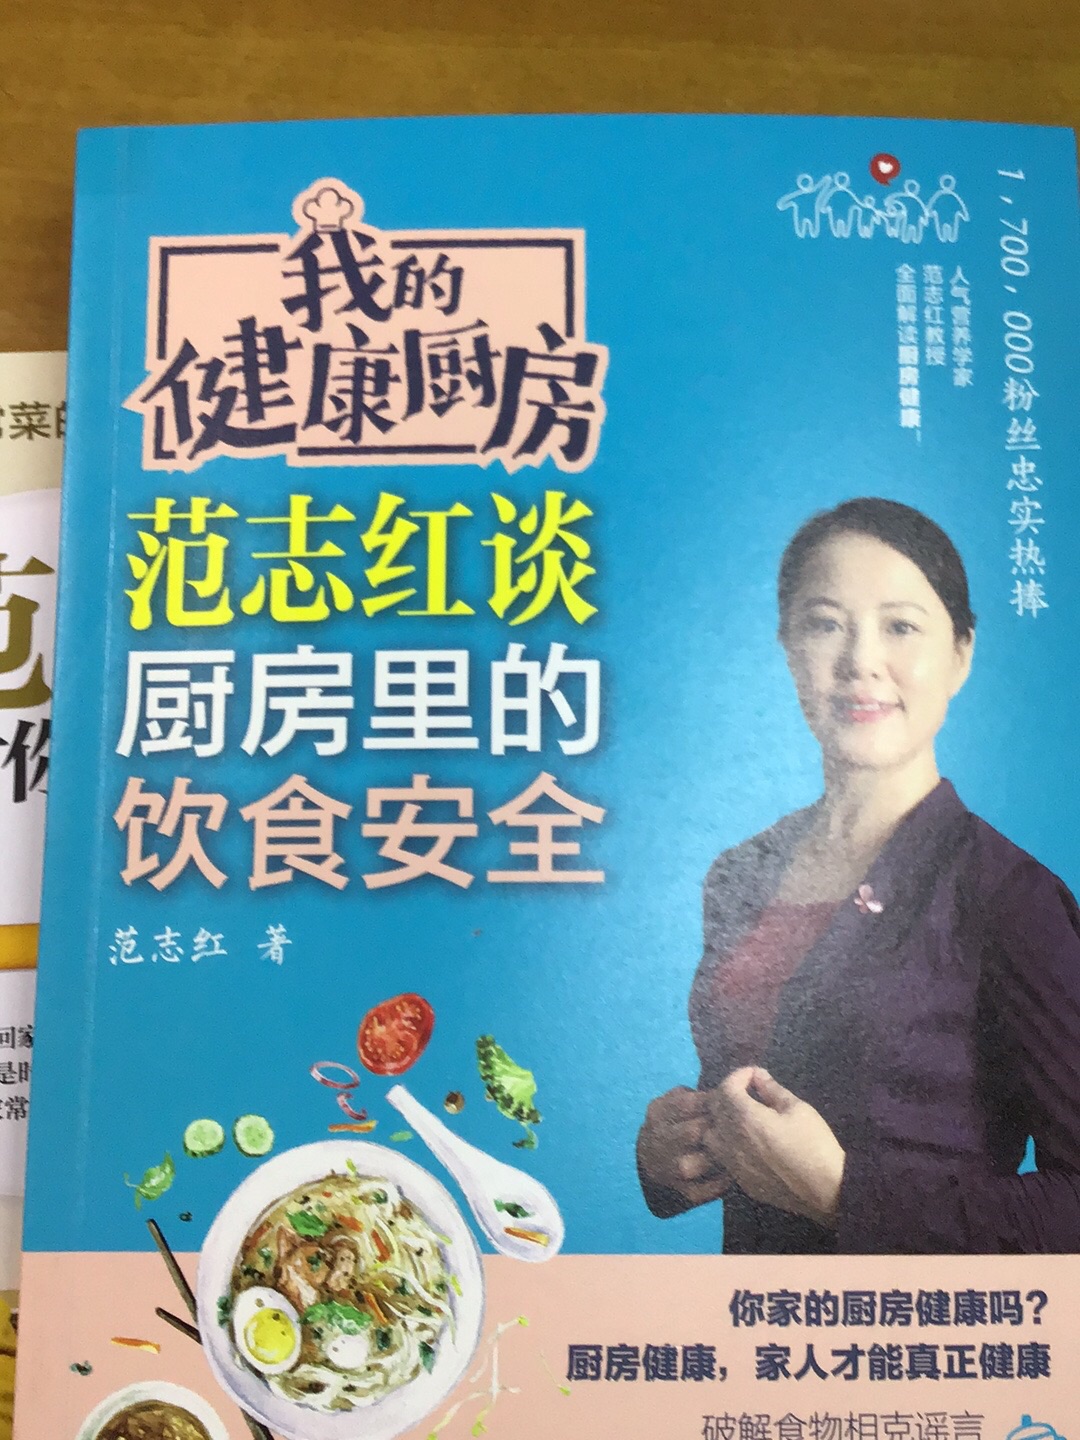 范志红教授的书很科学，有理有据，中国农大值得信赖！